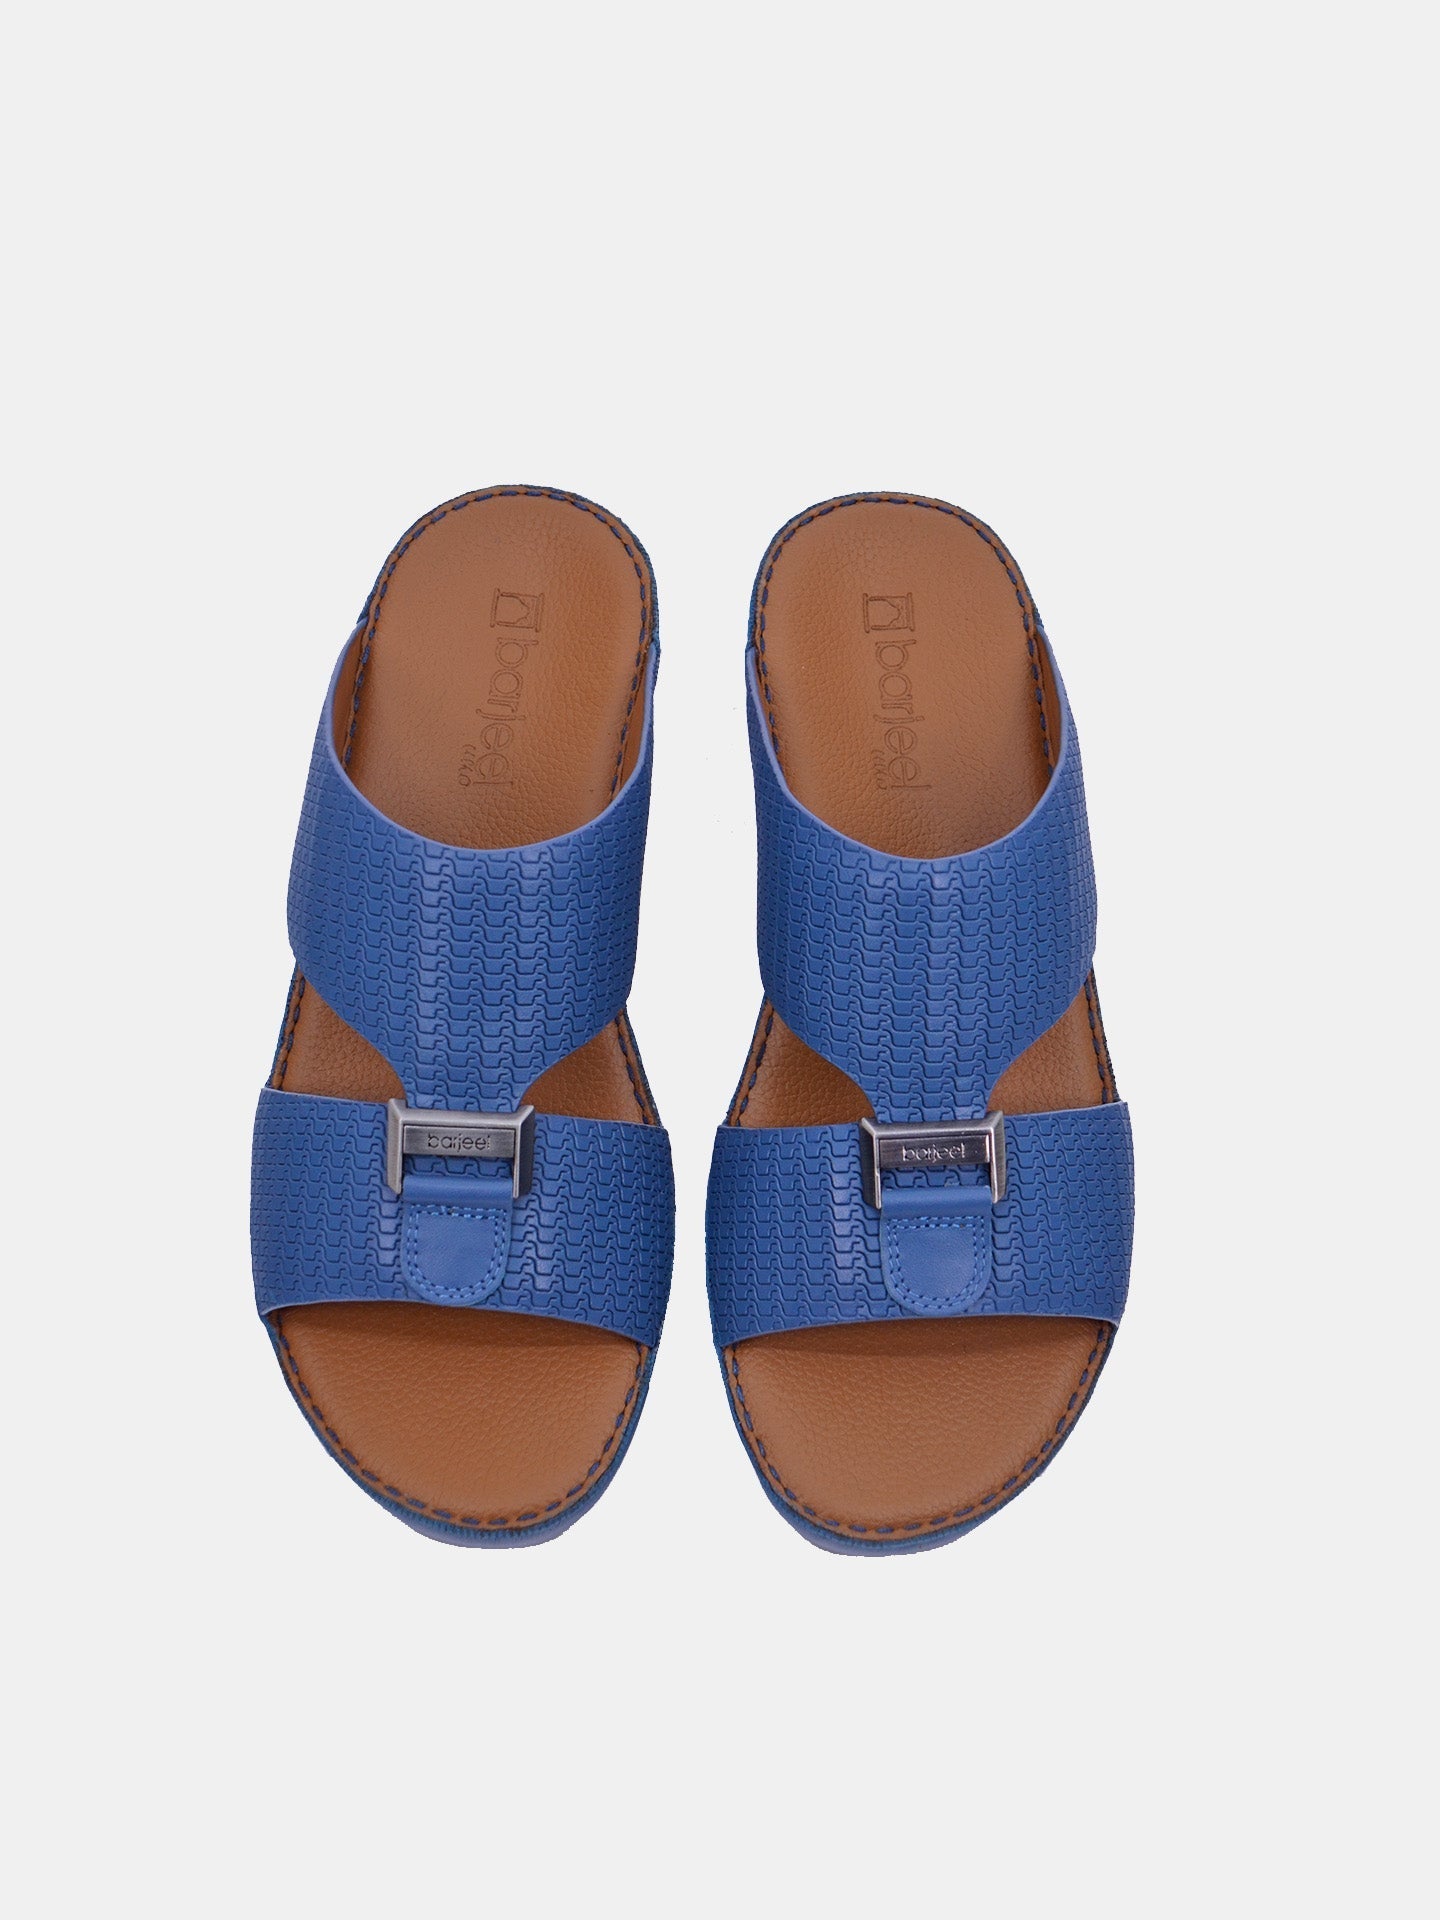 Barjeel Uno BSP1-54 Boys Arabic Sandals #color_Blue